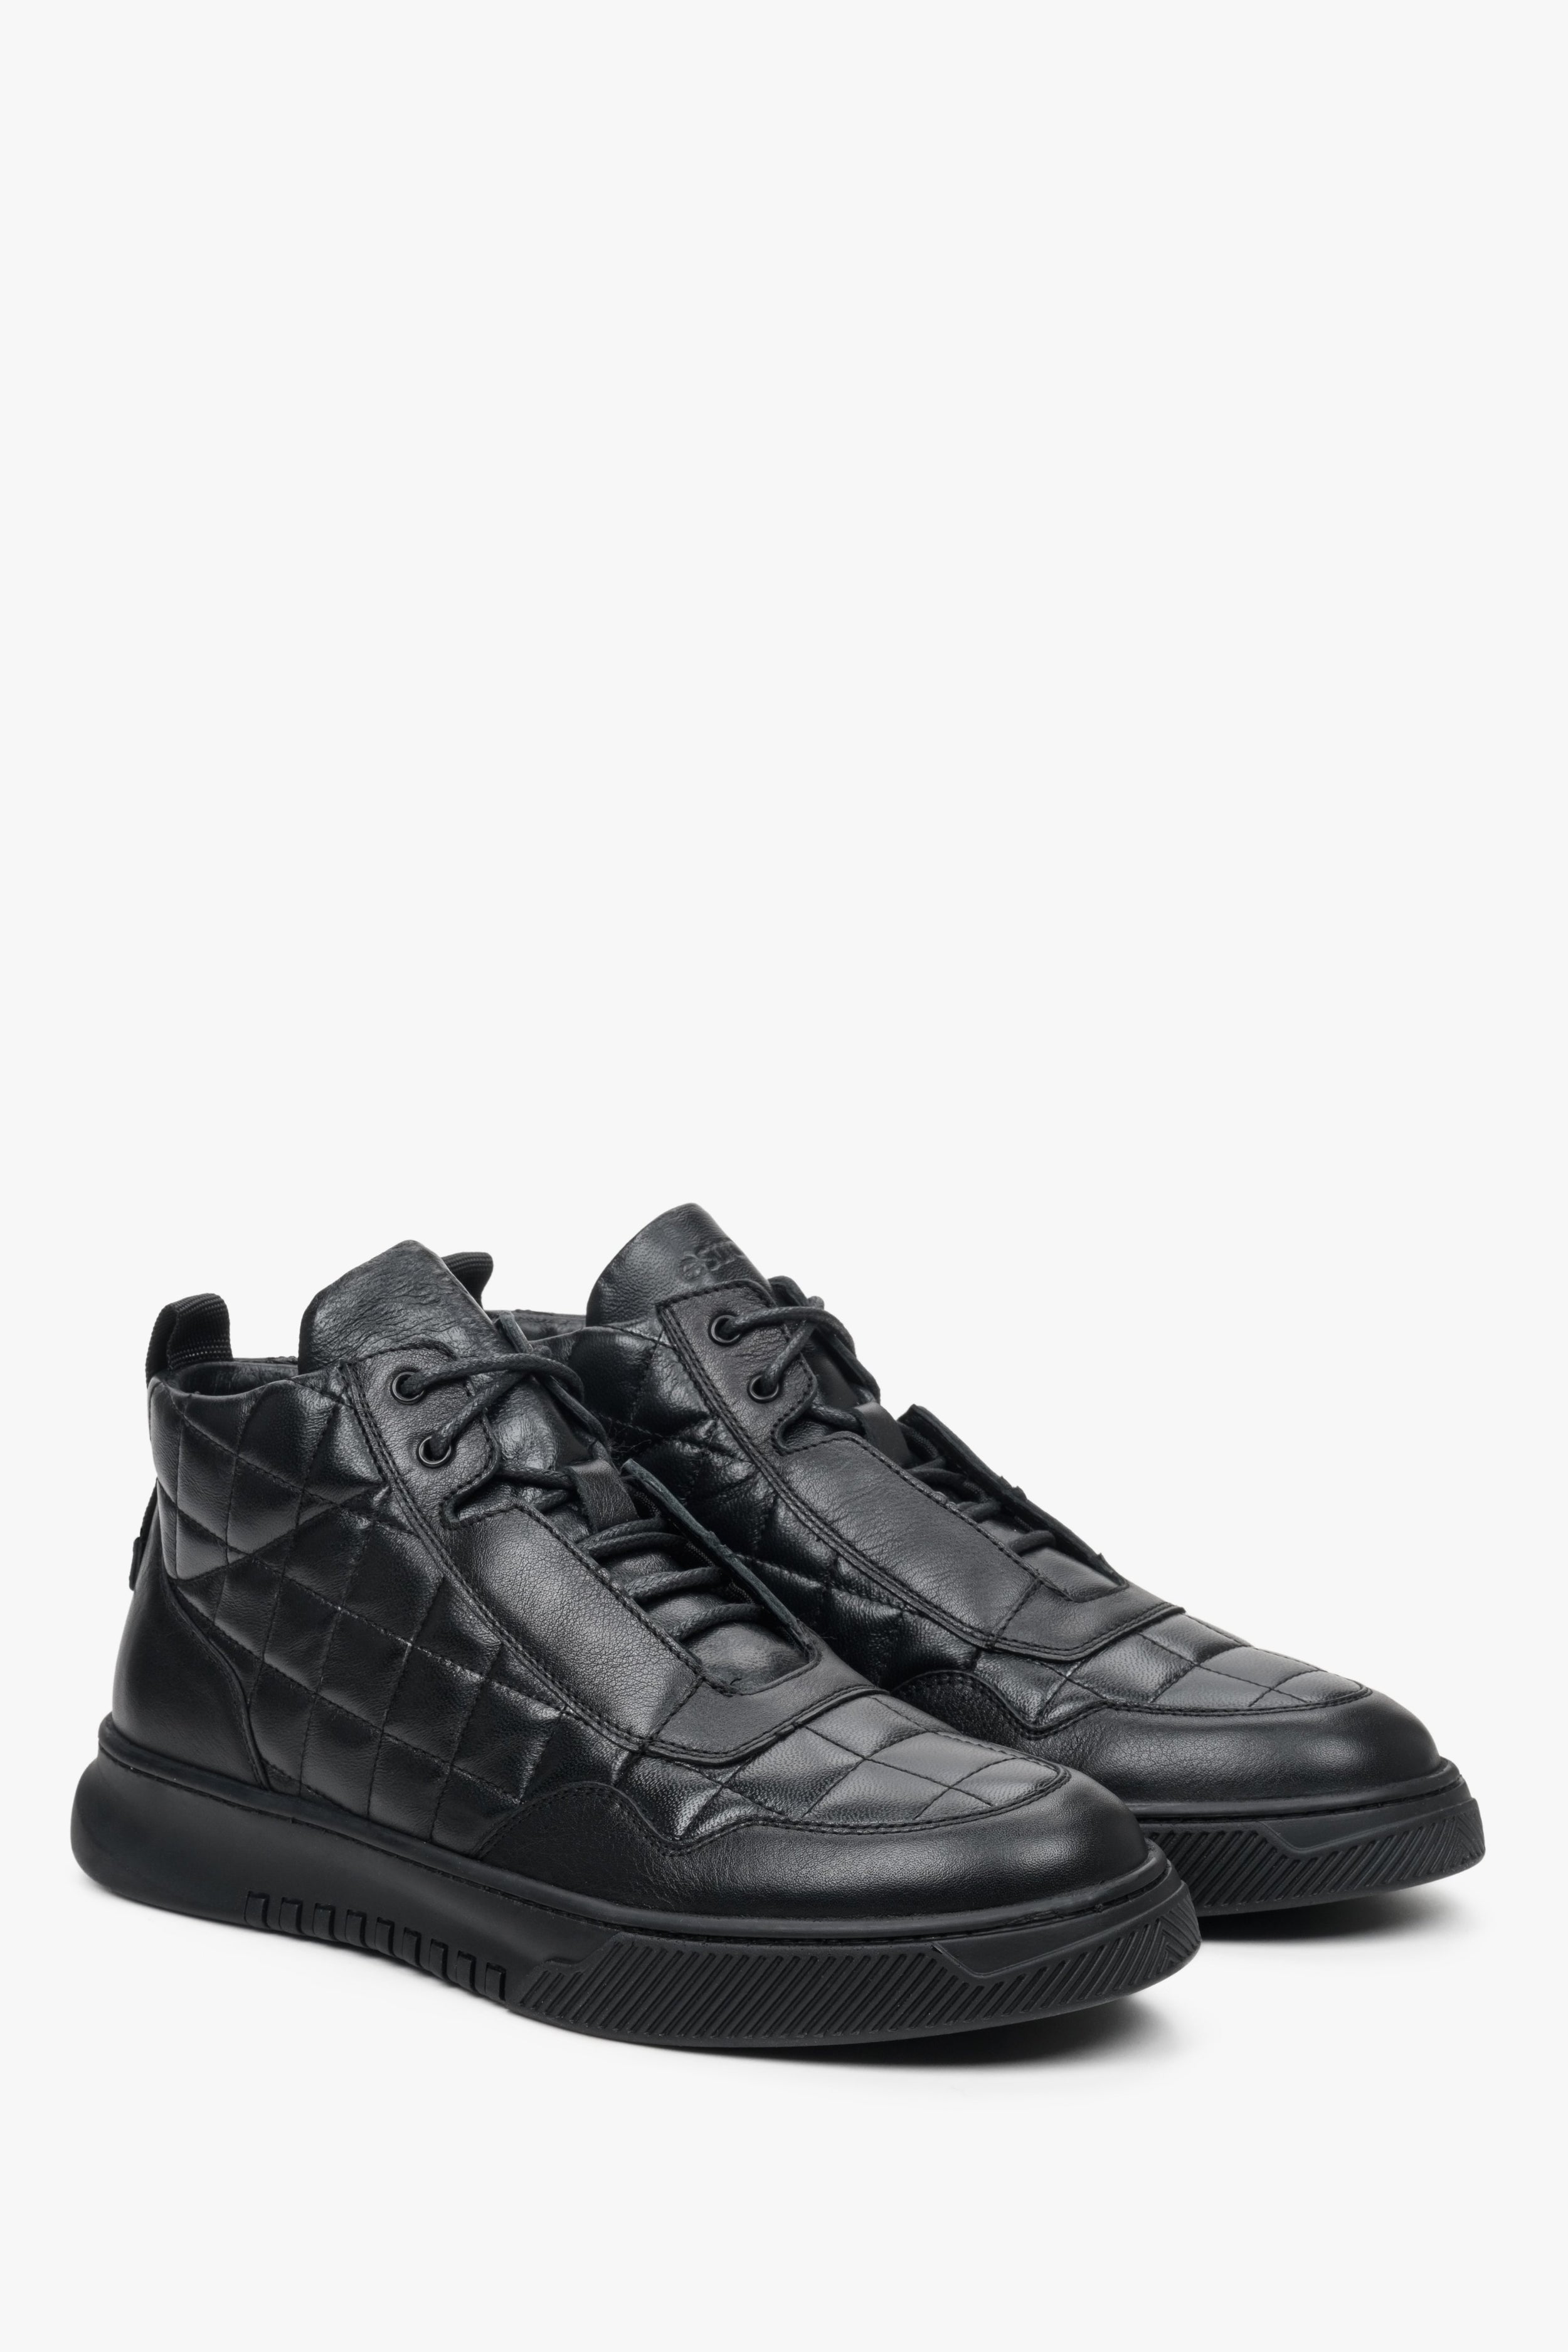 Estro: Wysokie sneakersy męskie czarne skórzane